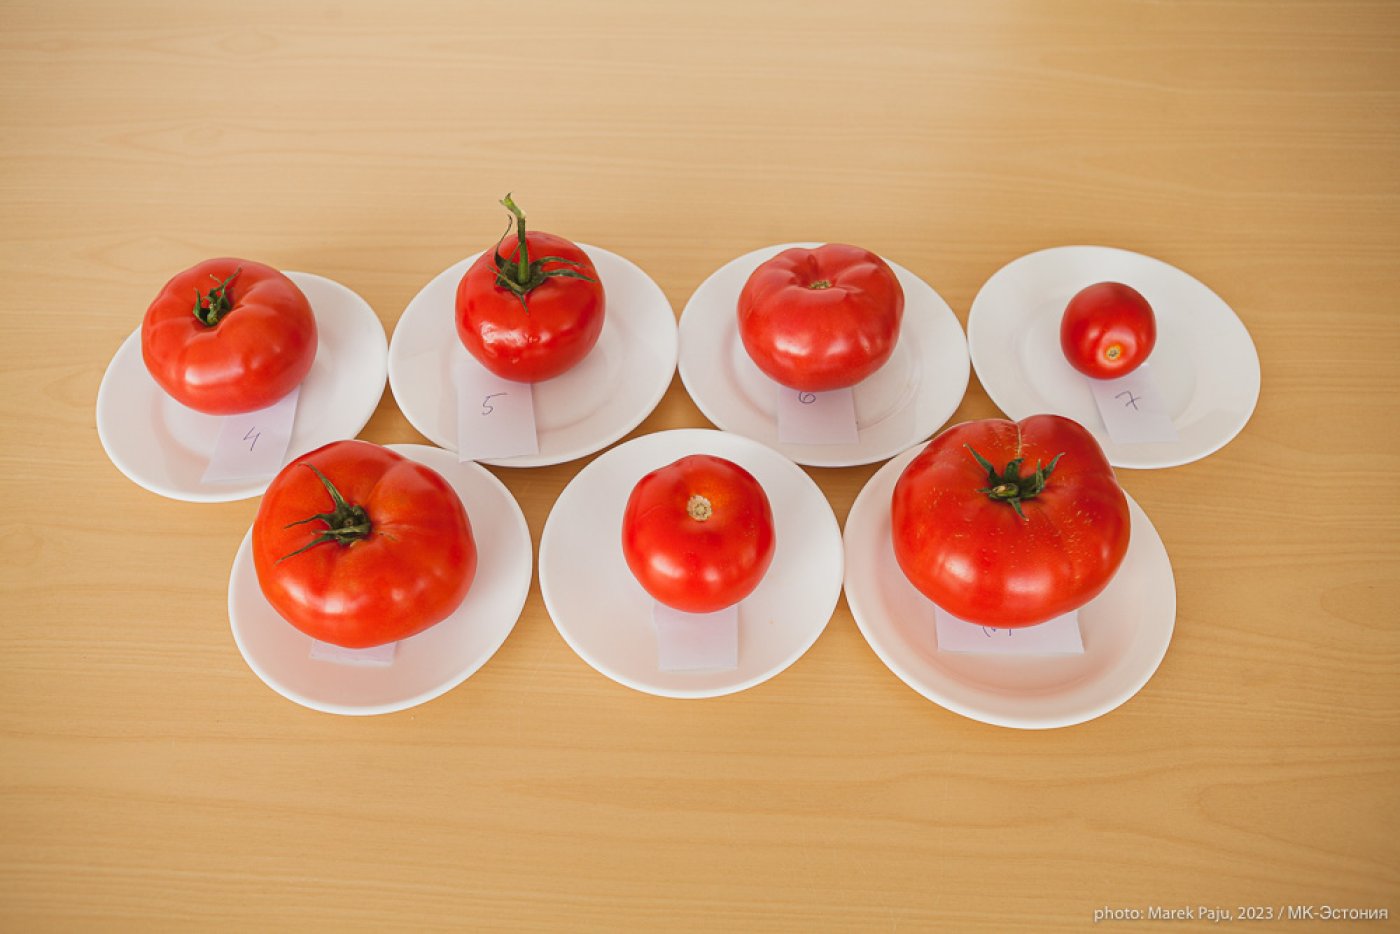 Как заменить томатную пасту помидорами (пропорции), что еще можно использовать - steklorez69.ru